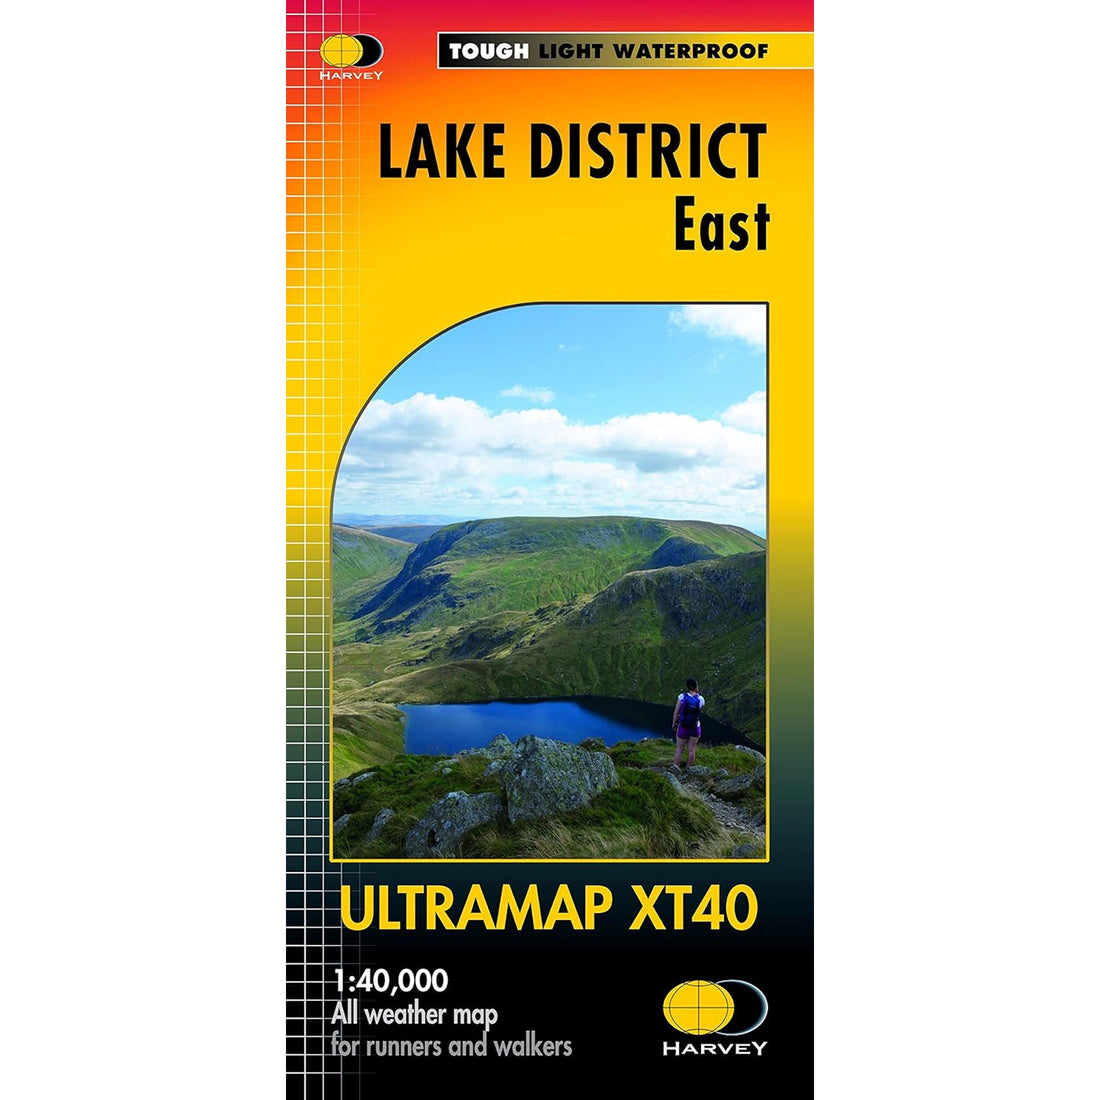 Ultramap Xt40 Map: Lake District East